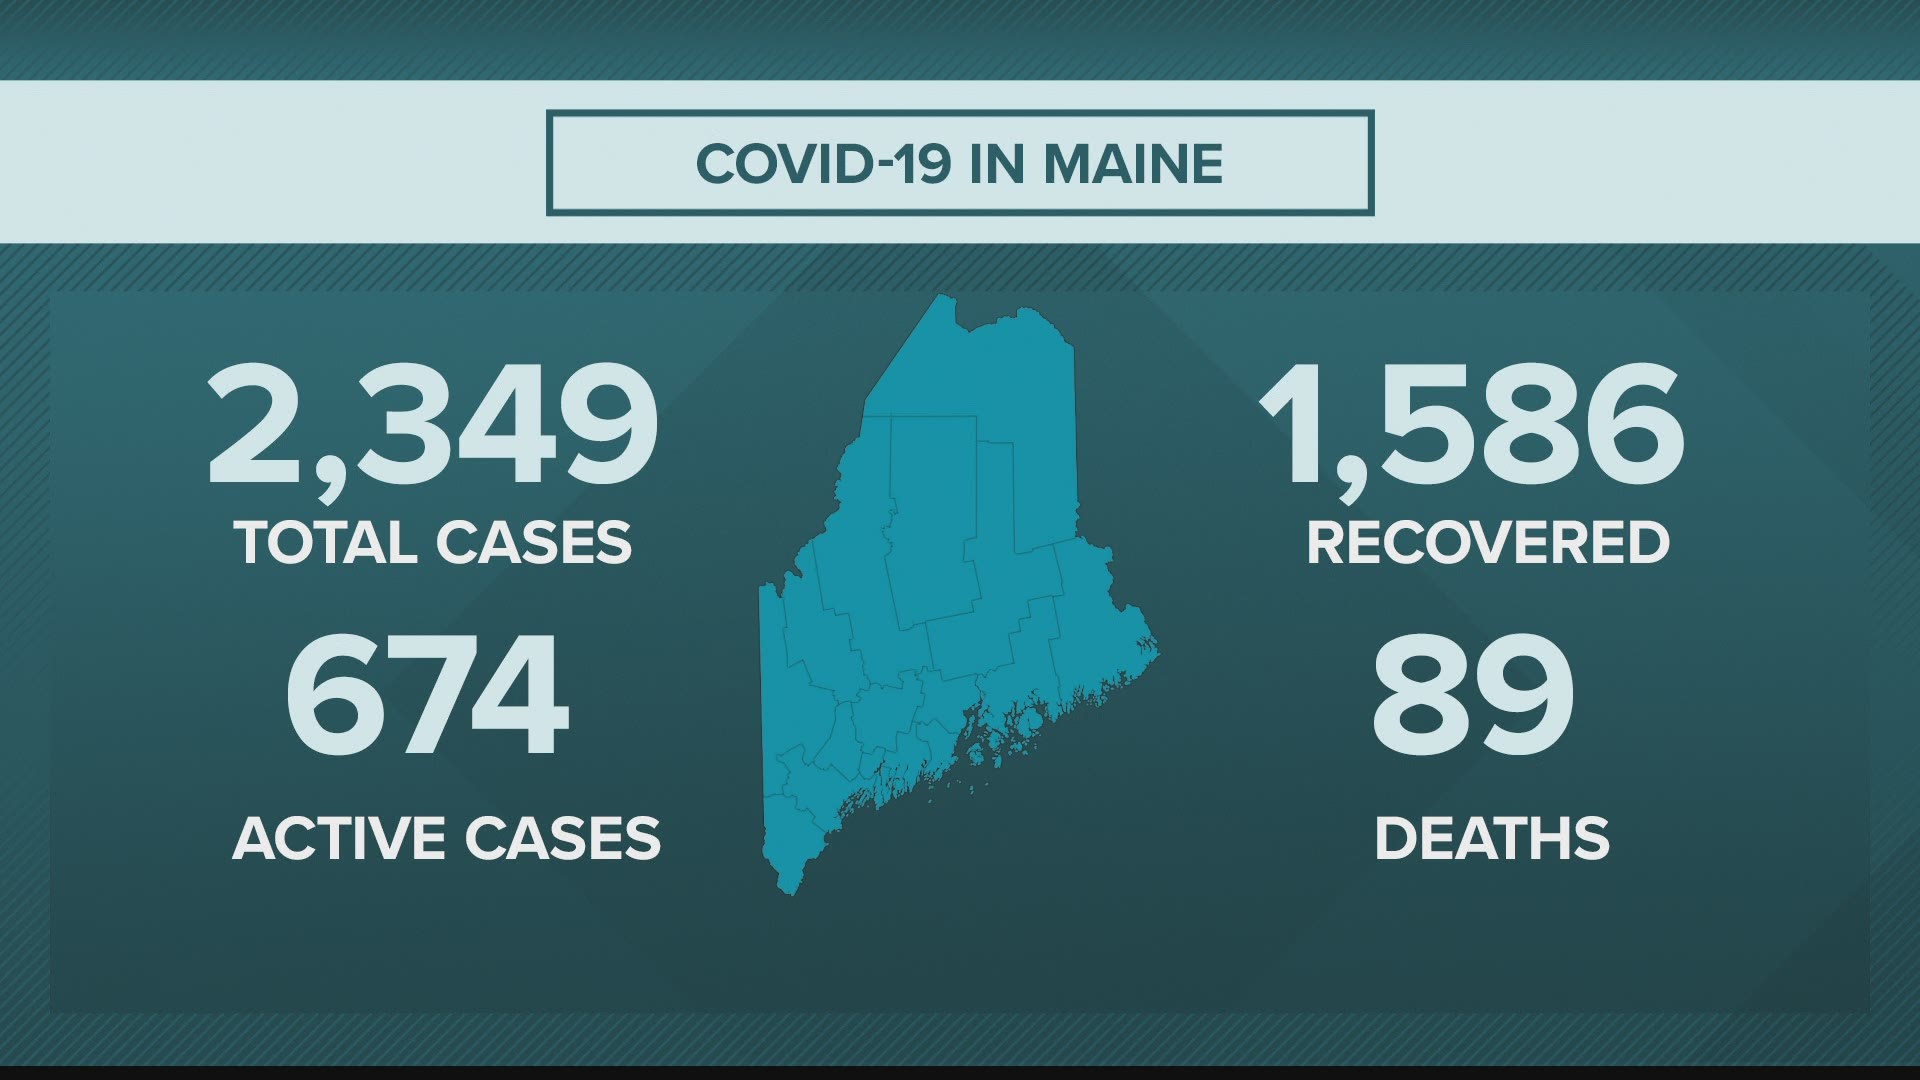 NEWS CENTER Maine Coronavirus, COVID-19 story update for Tuesday, June 2, 2020